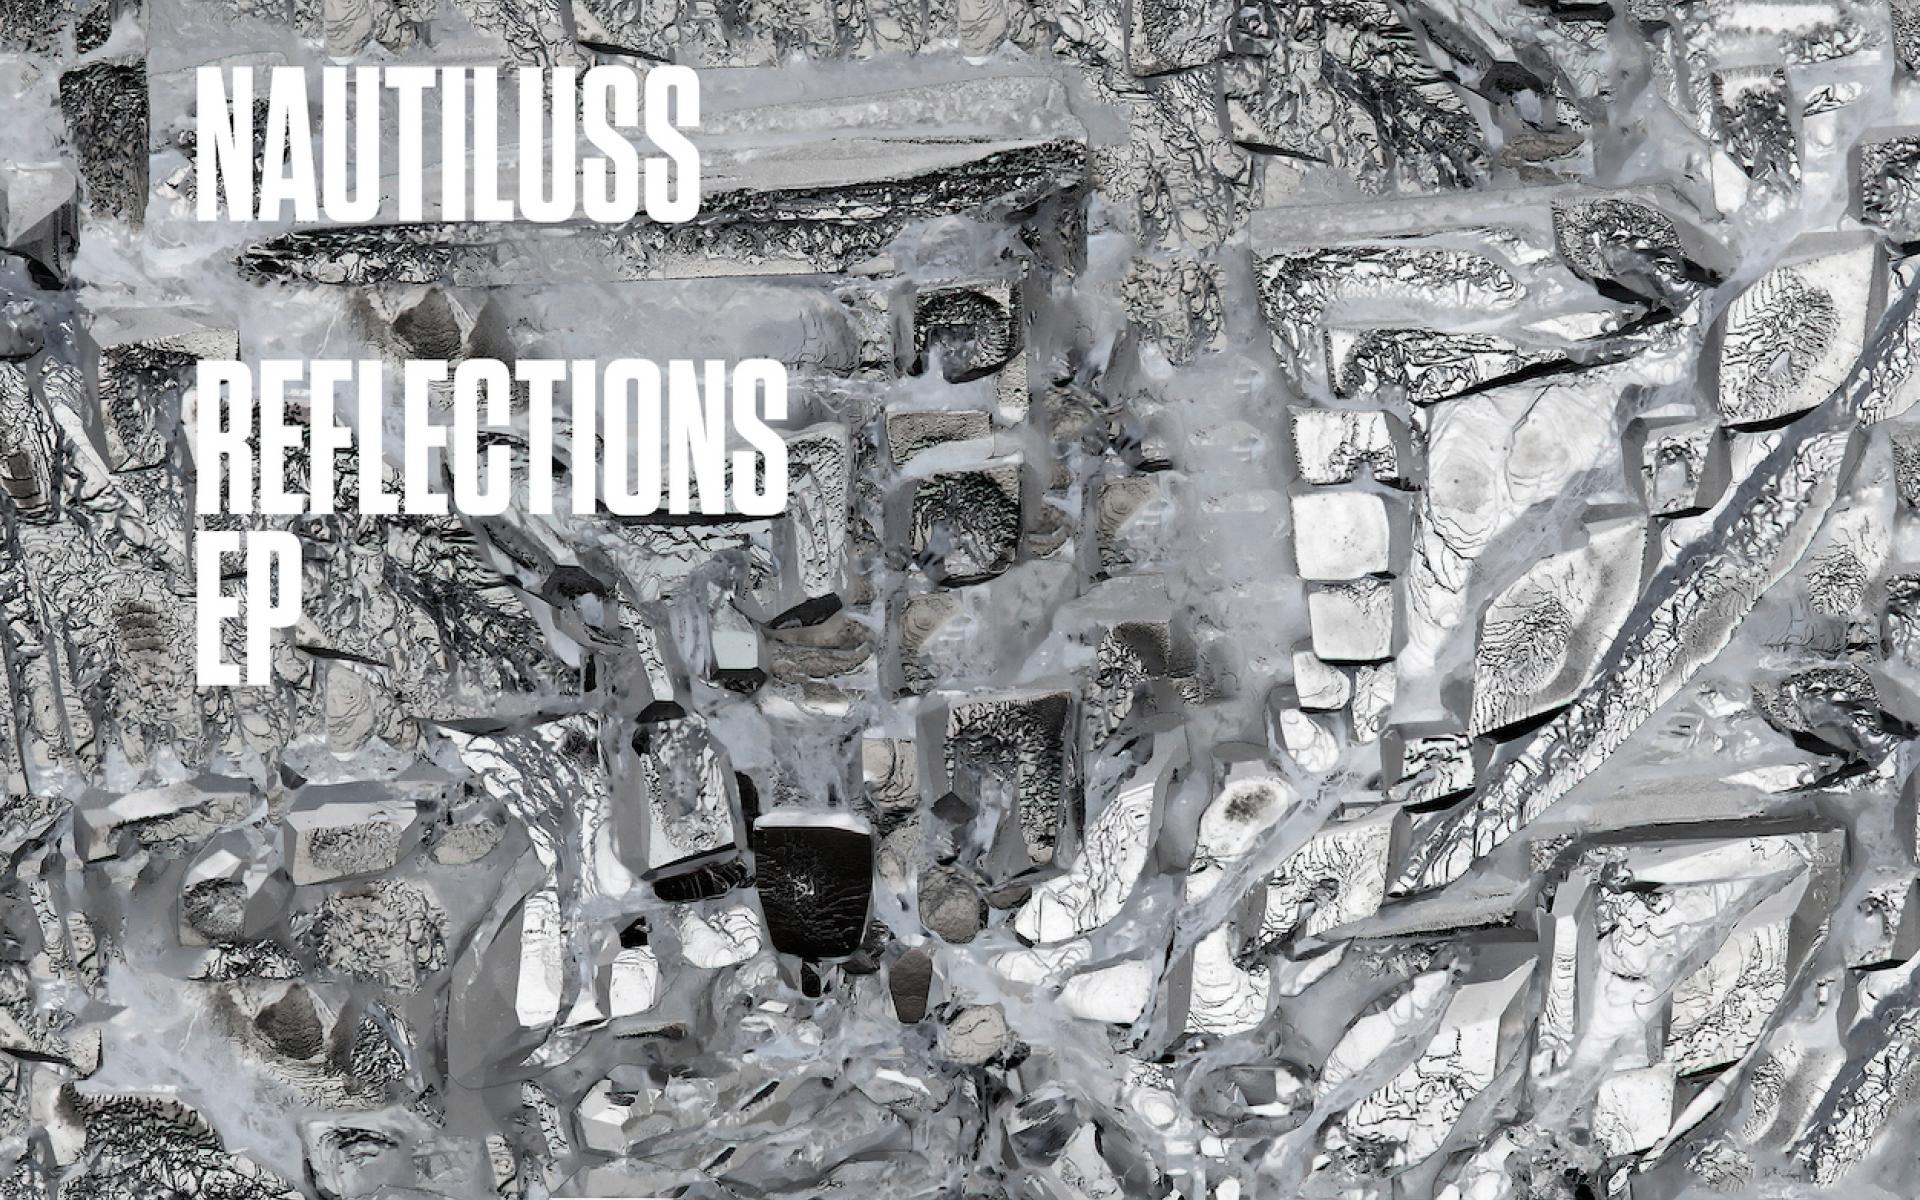  Nautiluss - Reflections EP